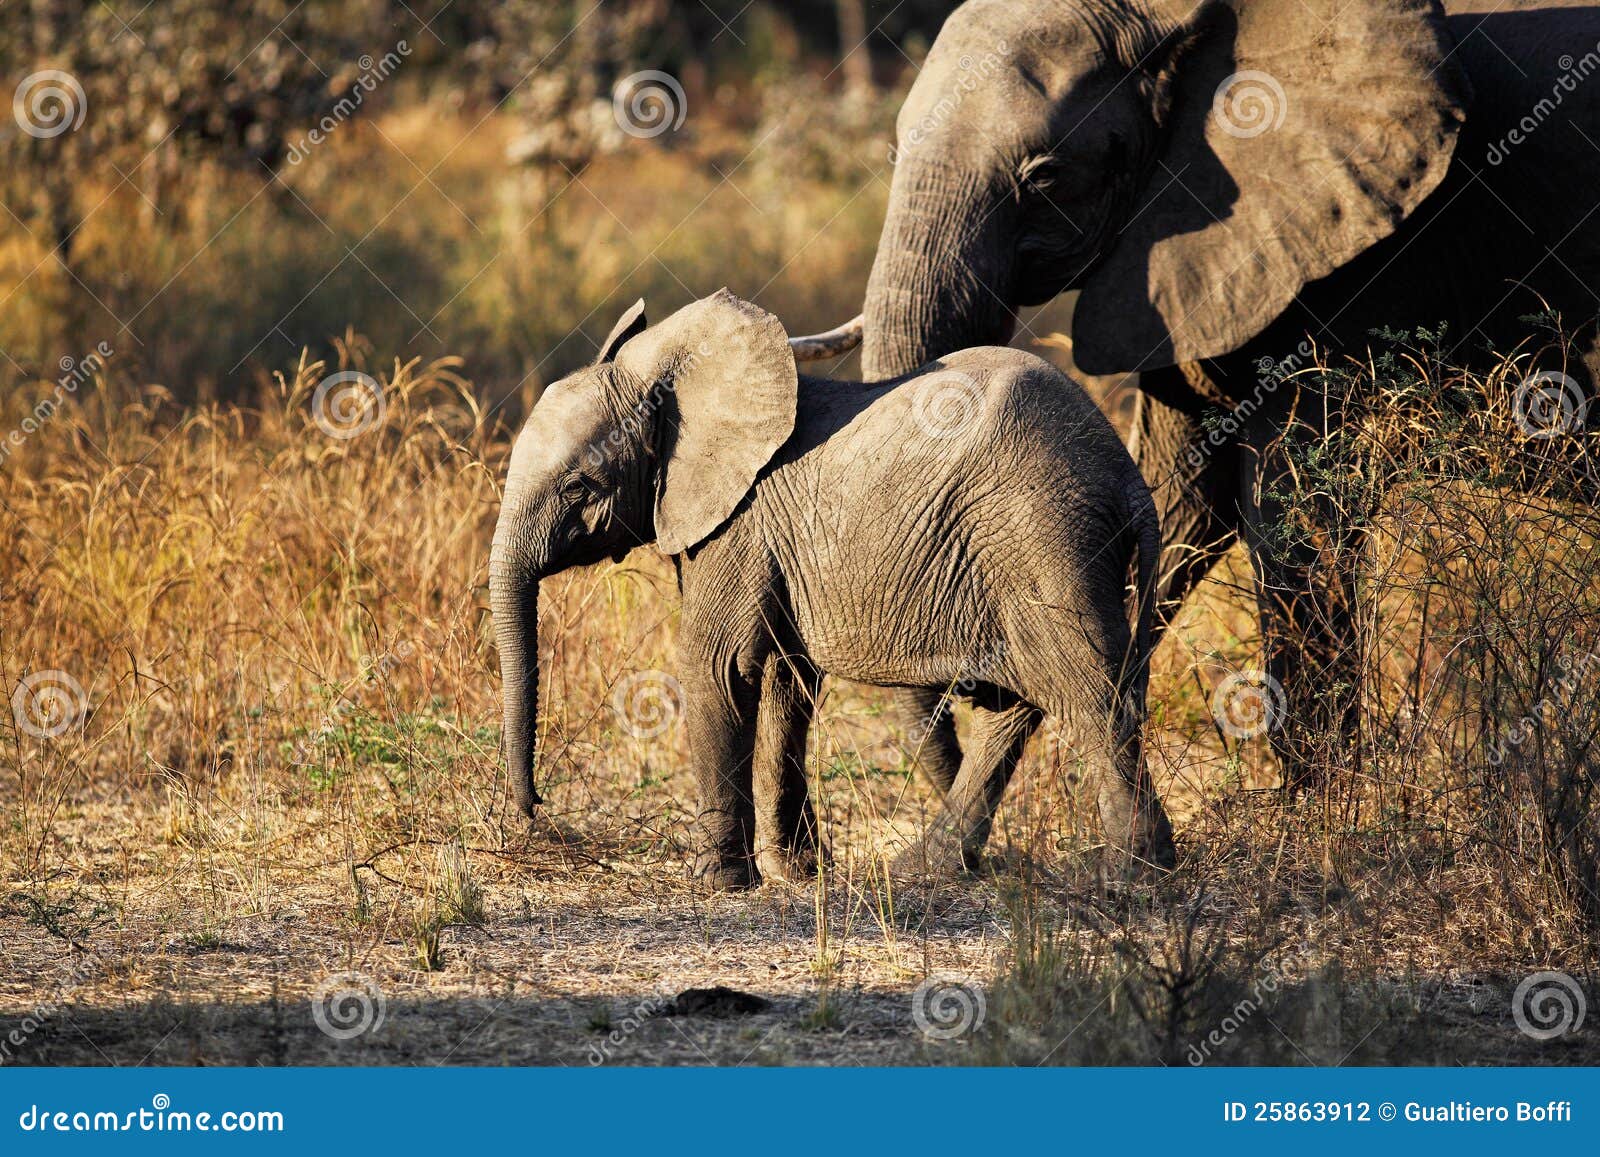 图片素材 : 冒险, 野生动物, 动物园, 哺乳动物, 国家公园, 动物群, 大草原, 苹果浏览器, 赞比亚, 印度大象, 非洲大象, 大象和 ...